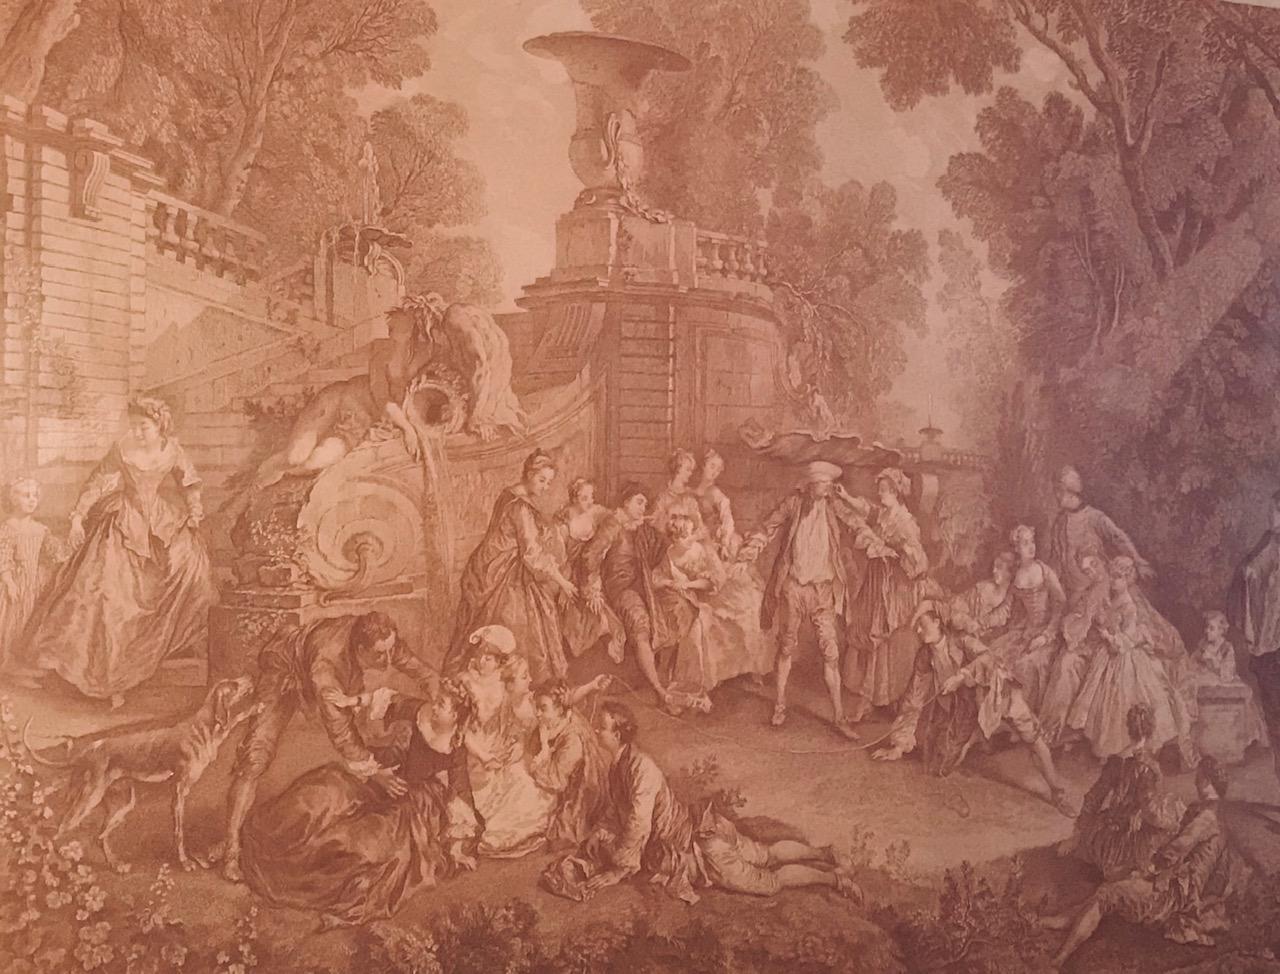 Il s'agit de l'une des meilleures gravures baroques réalisées par le remarquable graveur français C.N. Cochin (1715-1790). Il a été employé par le roi français Louis XV qui le considérait comme le maître graveur. La gravure aux tons sépia est